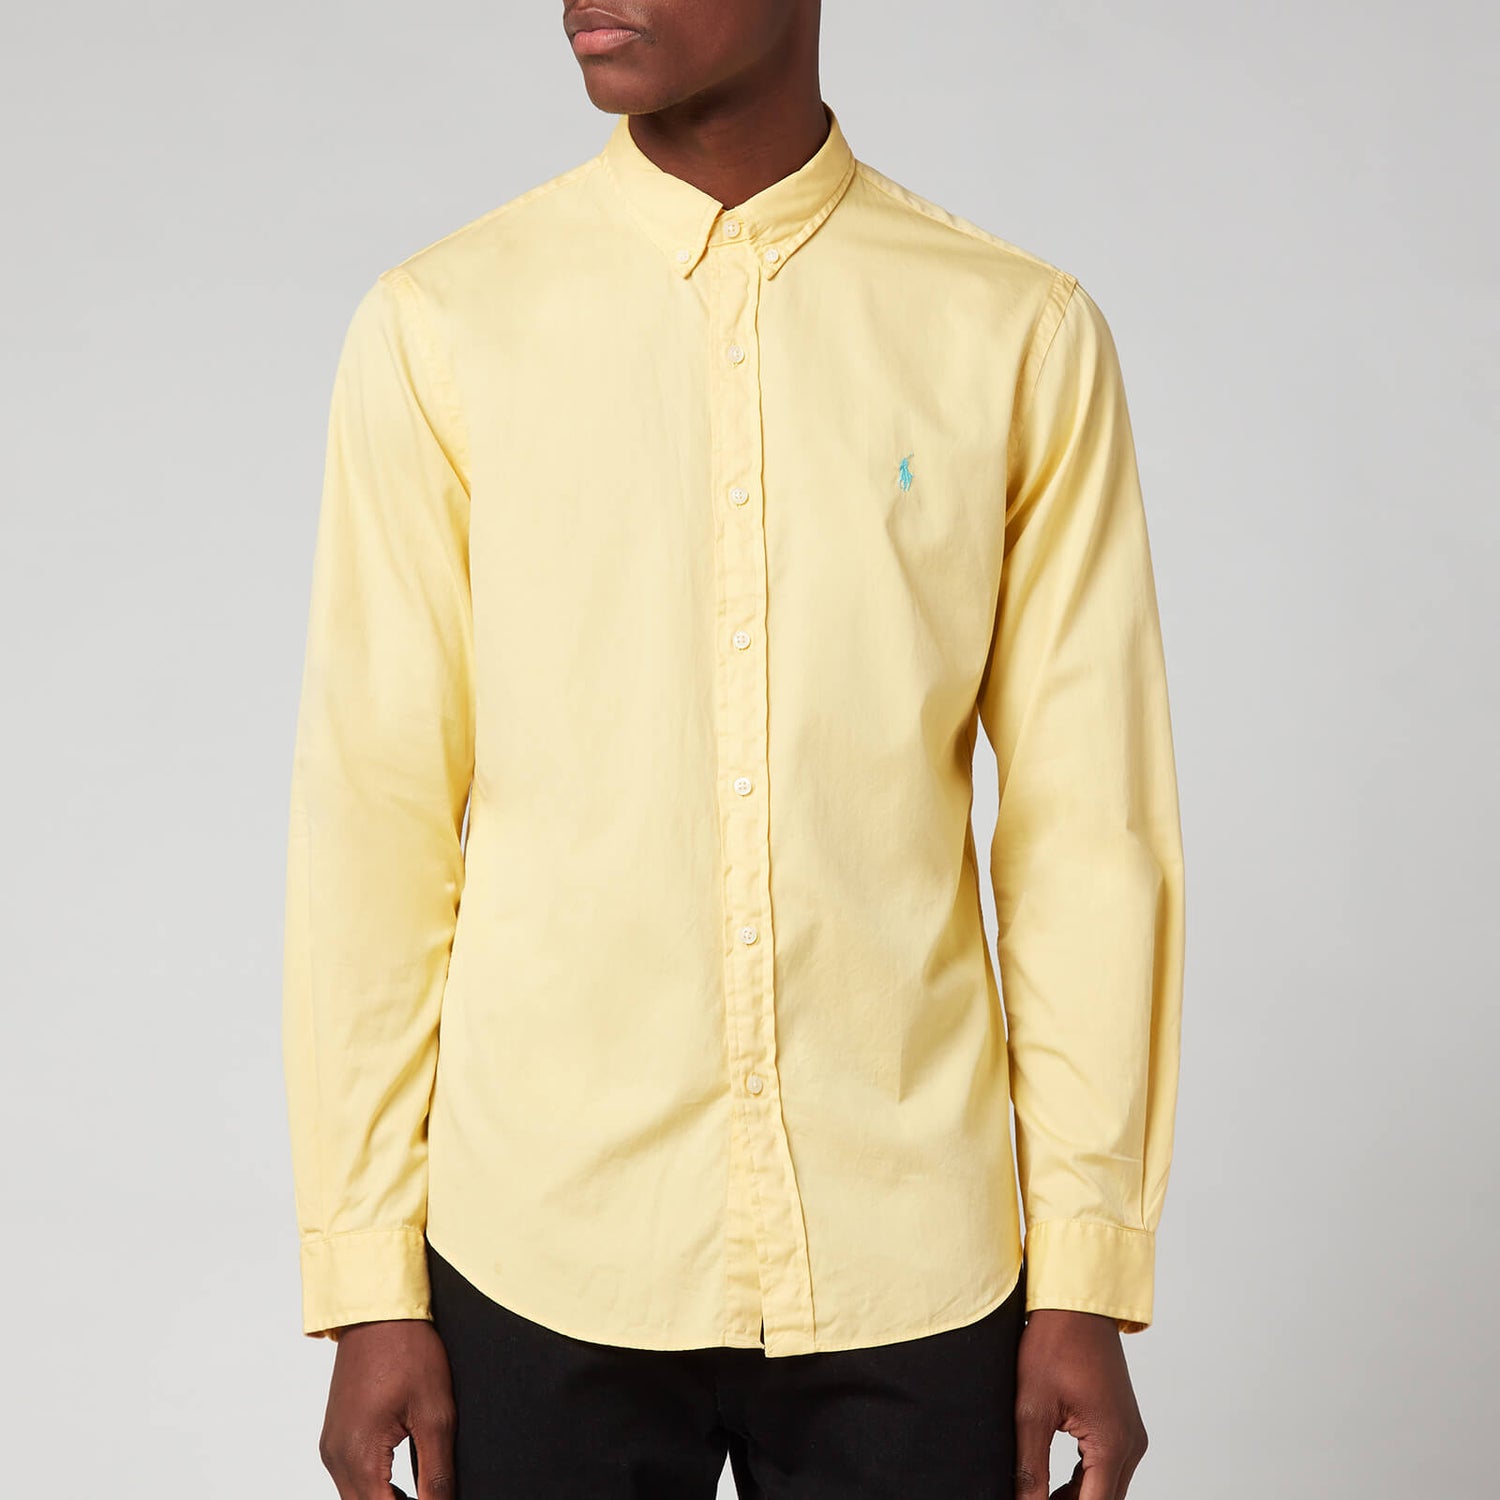 Polo Ralph Lauren Men's Slim Fit Chino Sport Shirt - Empire Yellow